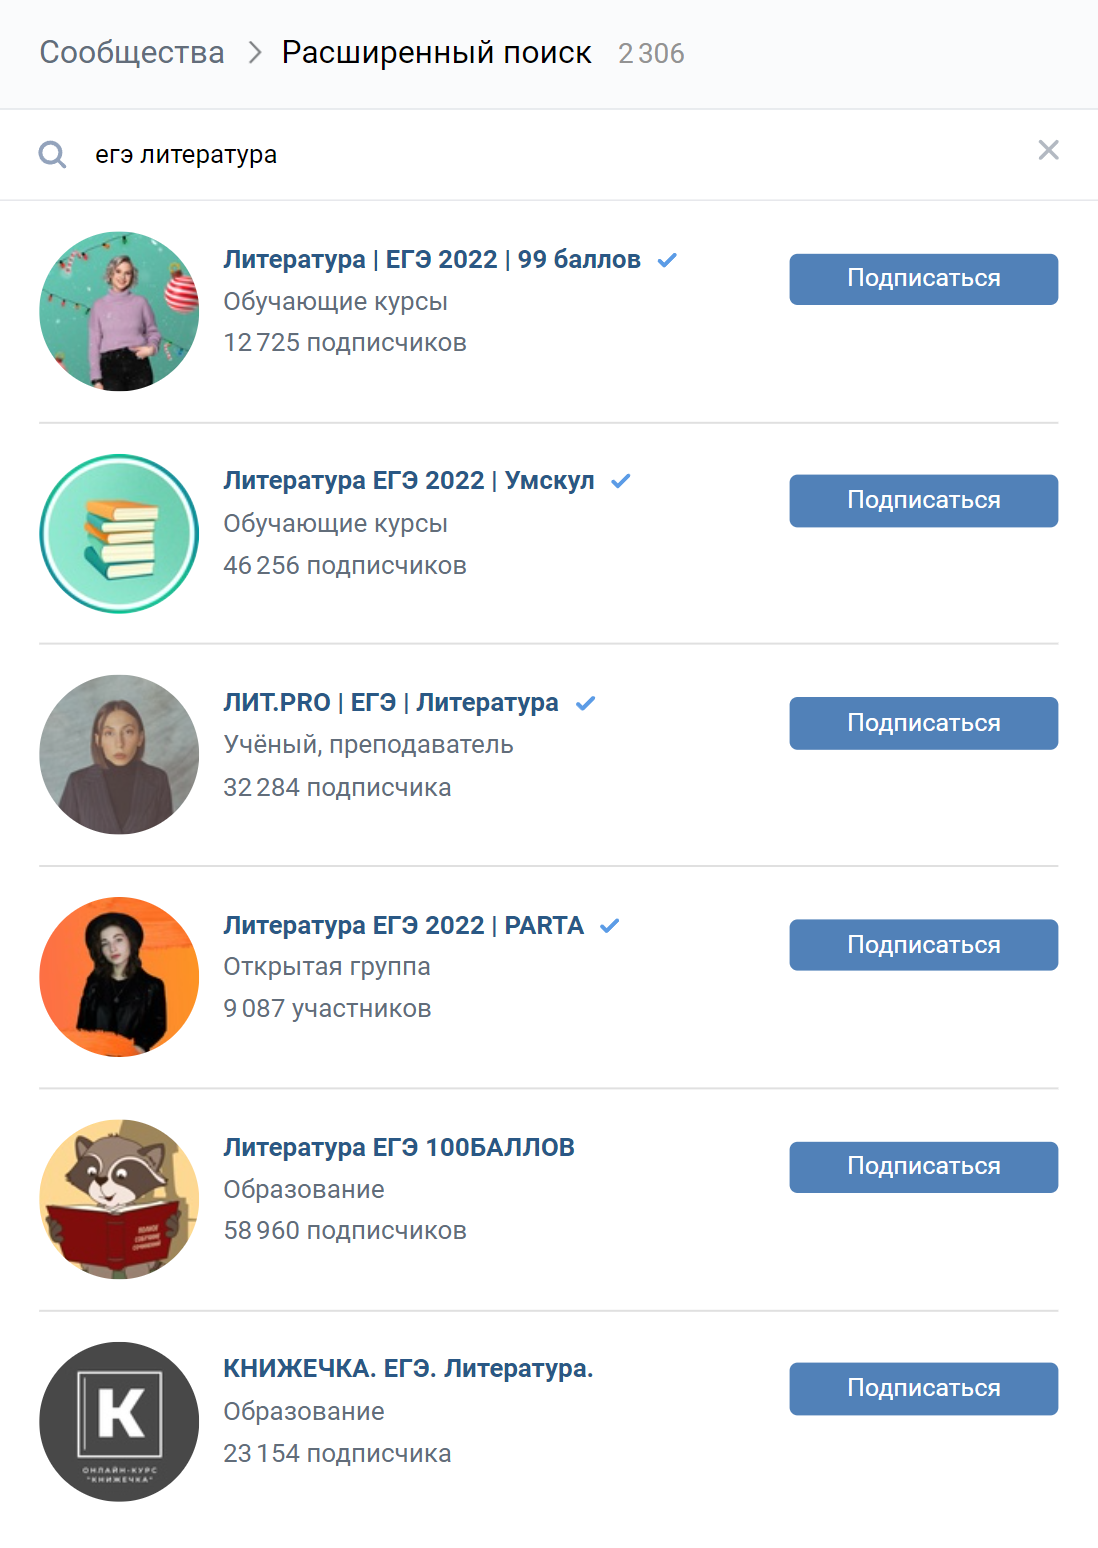 «Вконтакте» выдает 2306 результатов по ключевому запросу «ЕГЭ литература». Для сравнения: по запросу «ЕГЭ математика» найдено 3373 сообщества